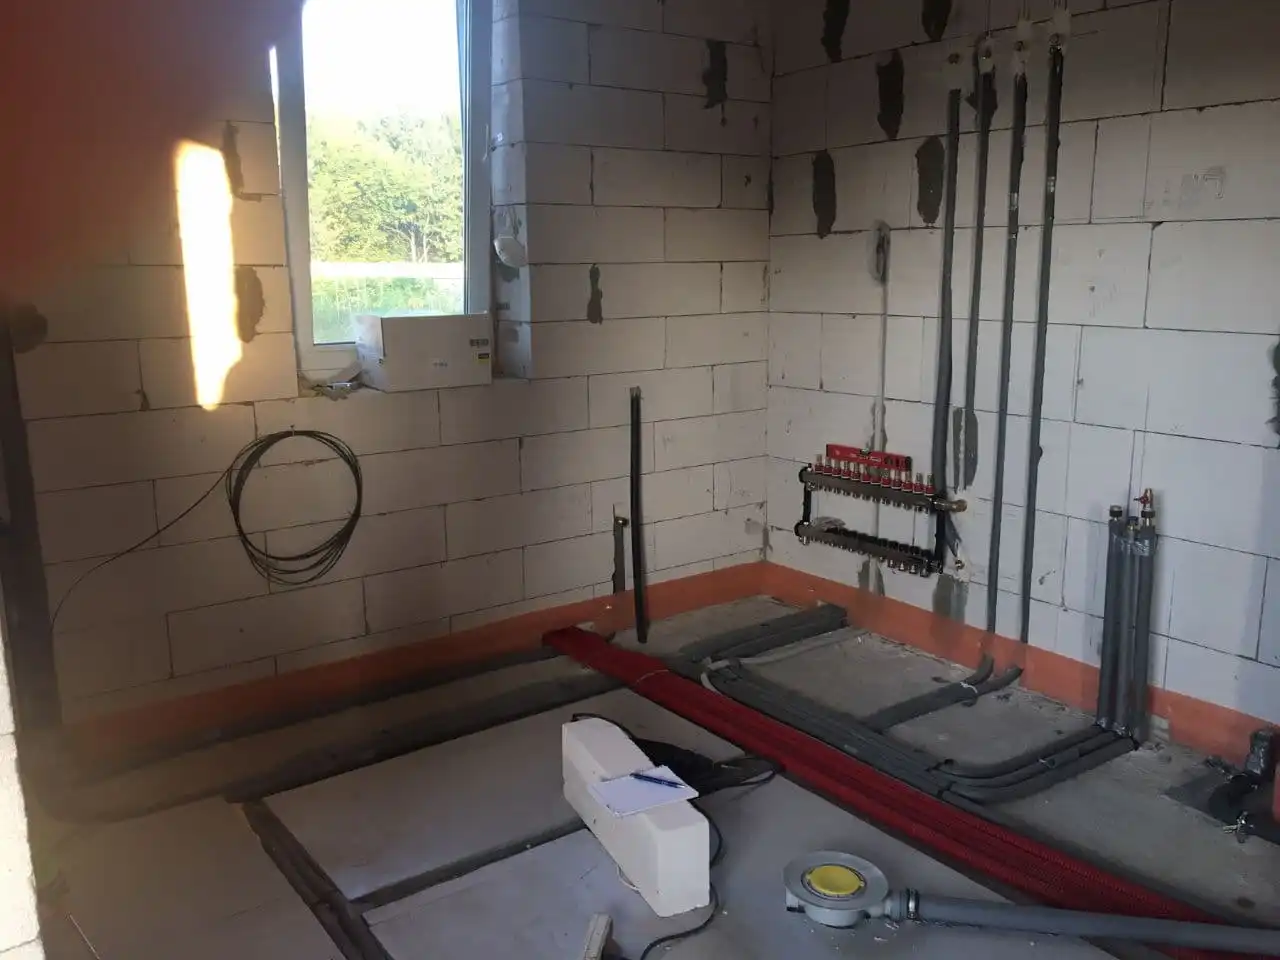 Instalatérská pohotovost - PRAHA Havarijní služba instalatéři 24/7  rozvody vody v rodinnem domě